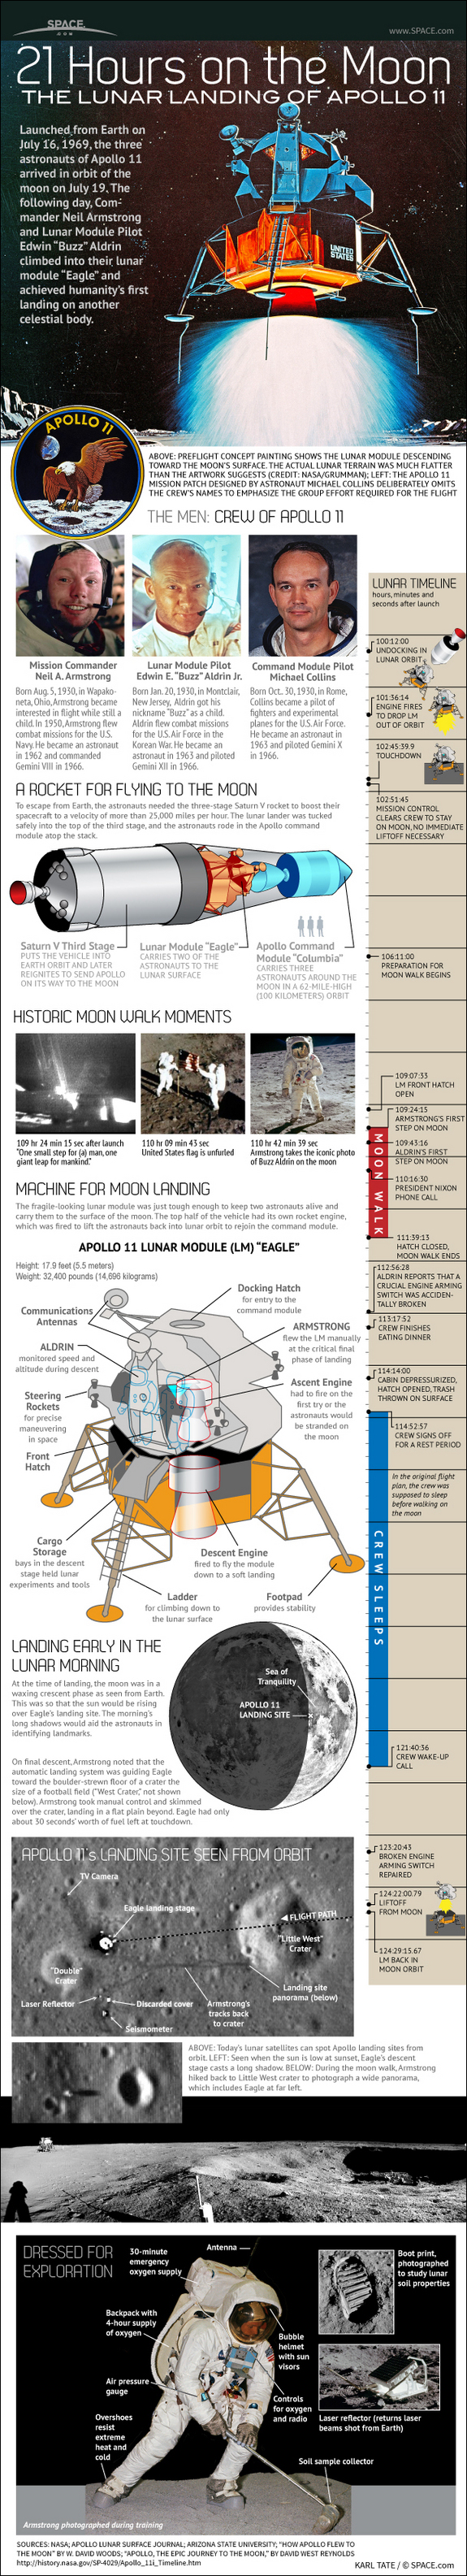 Apollo 11 Moon Landing Infographic